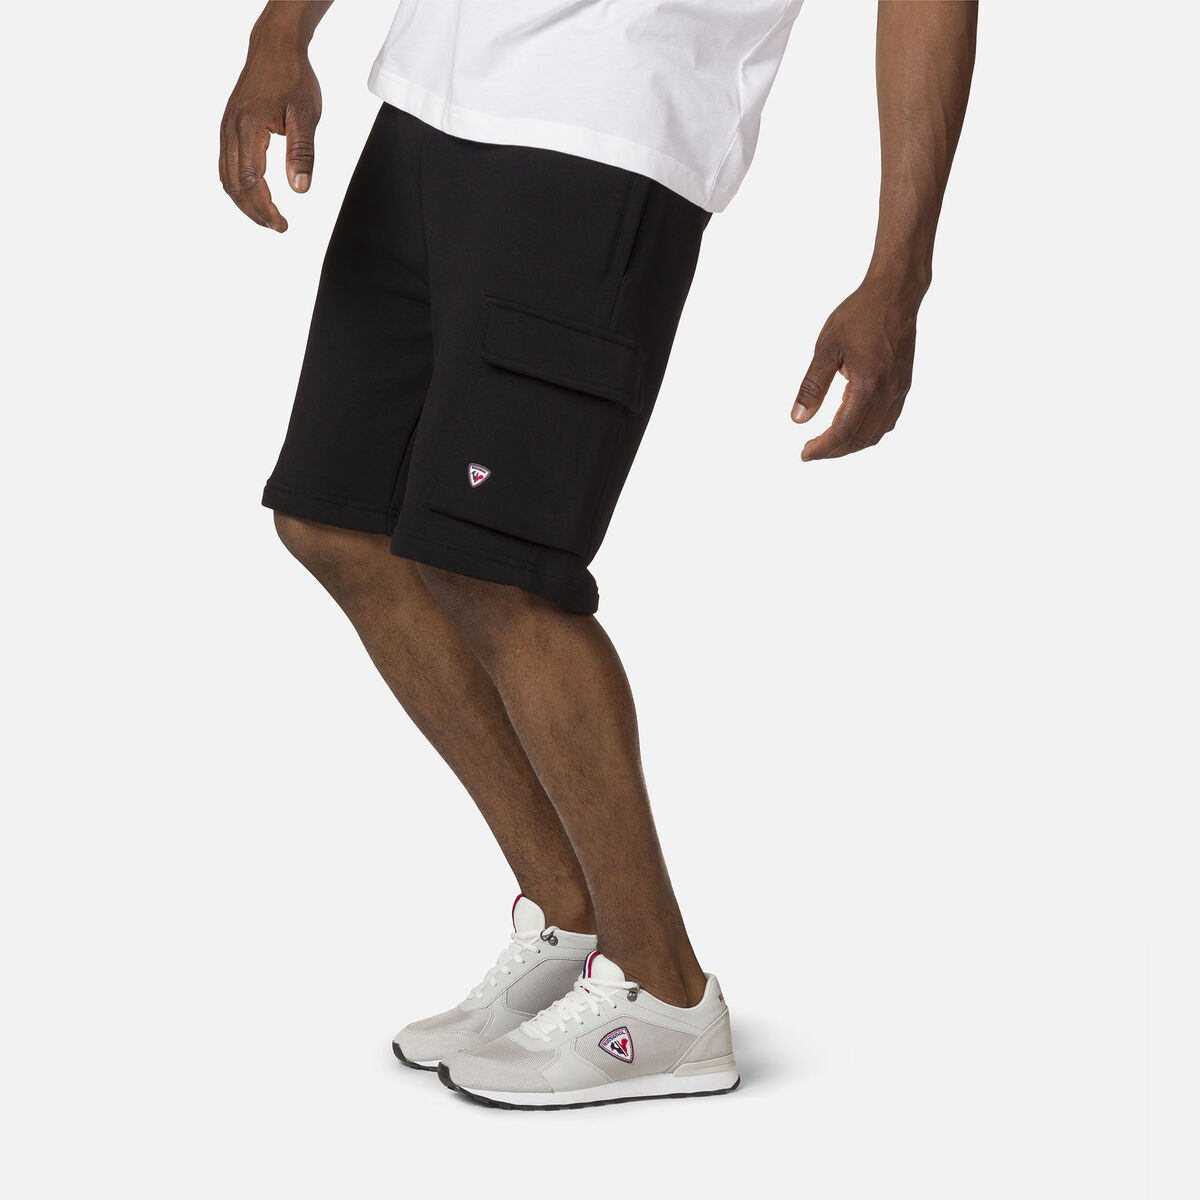 Men's cotton comfortable Shorts